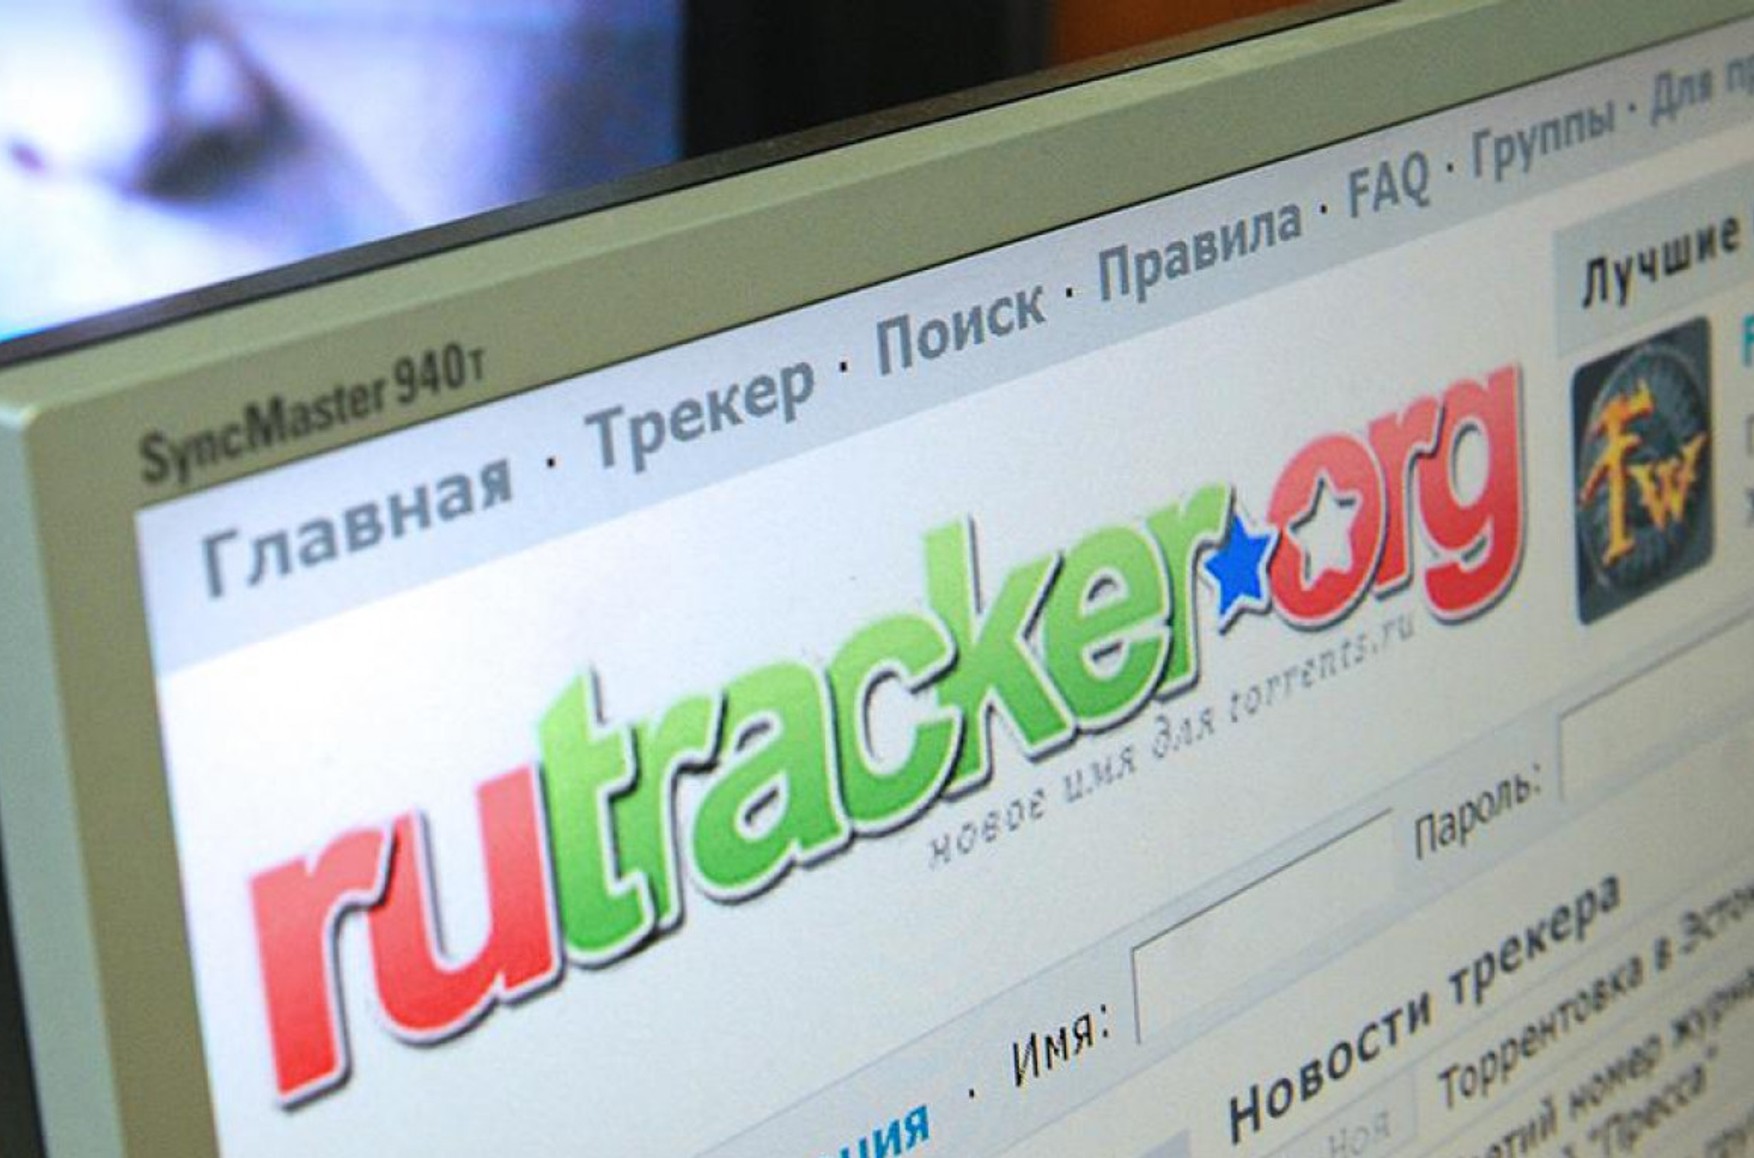  Сервис с «пиратским» контентом RuTracker закроет доступ для россиян, даже если его разблокируют в России — Forbes